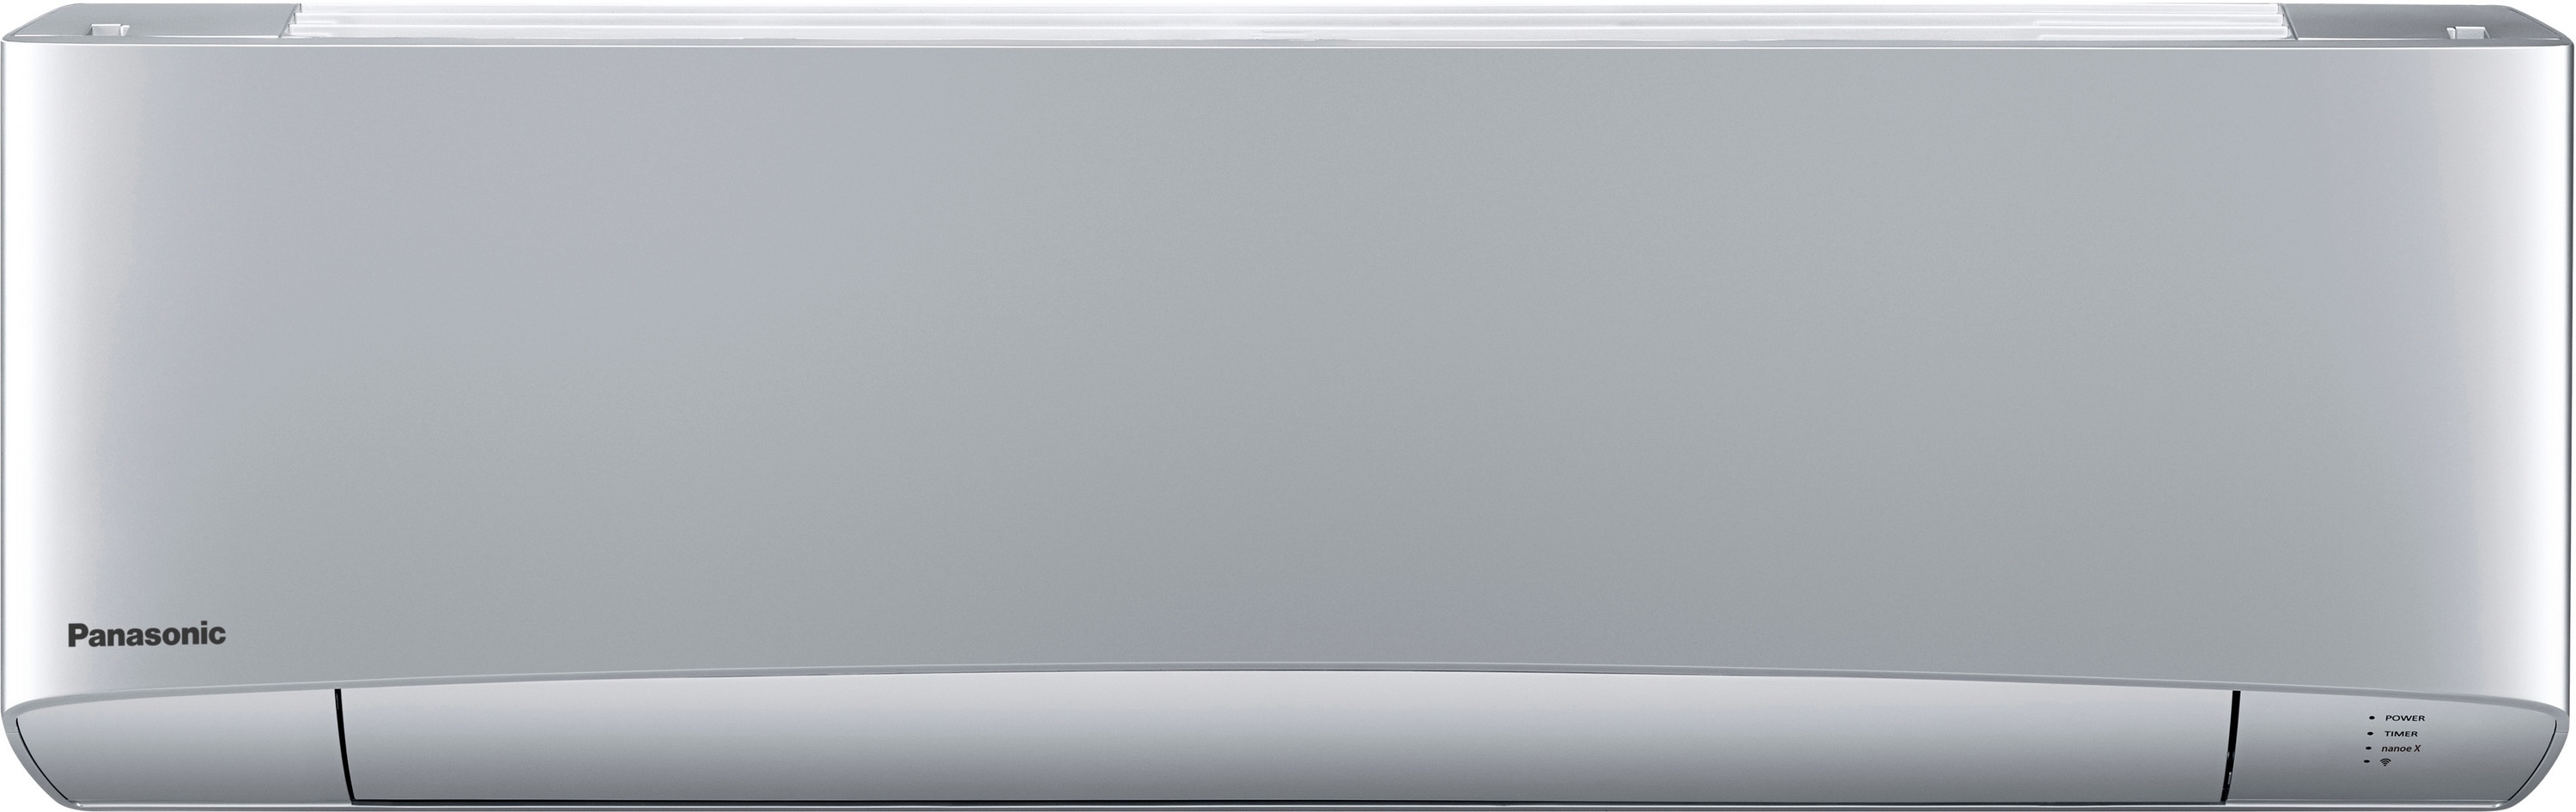 Внутренний блок мультисплит-системы Panasonic Flagship Silver CS-XZ35TKEW в интернет-магазине, главное фото